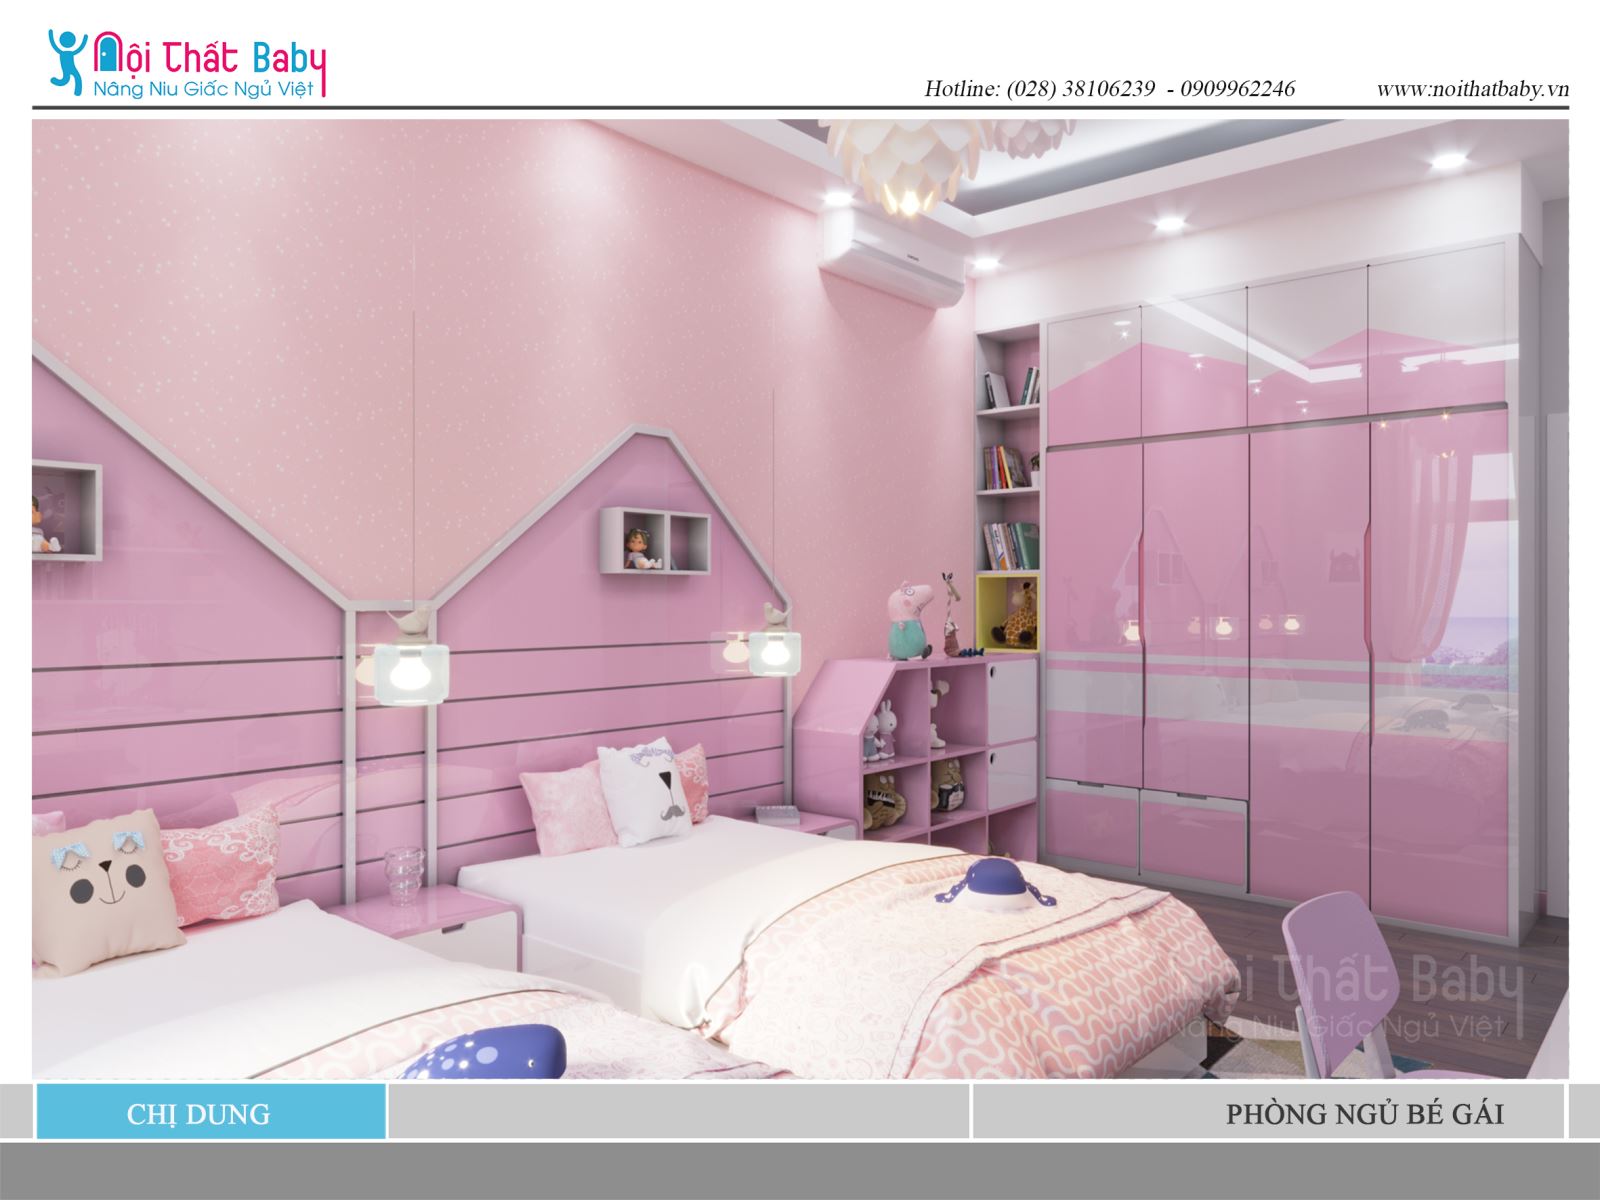 Giường ngủ màu hồng dễ thương là lựa chọn tuyệt vời cho bé gái của bạn. Kiểu dáng đơn giản với màu hồng pastel, giường ngủ này sẽ mang lại cảm giác ấm áp và thân thiện cho bé gái của bạn.